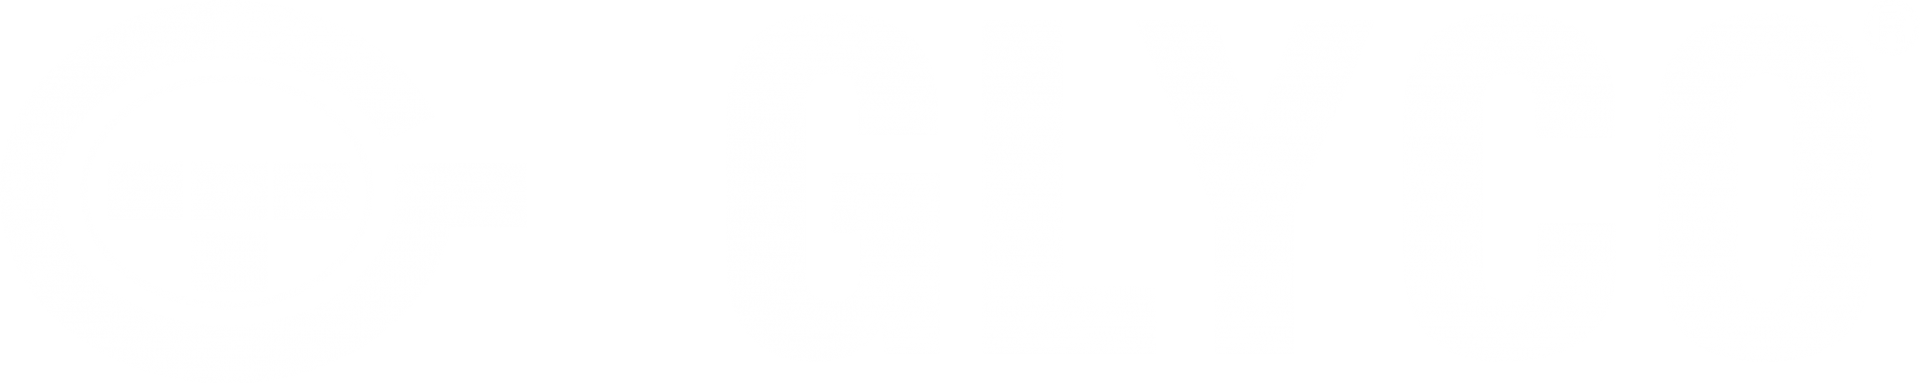 glyco-1-logo-transparent